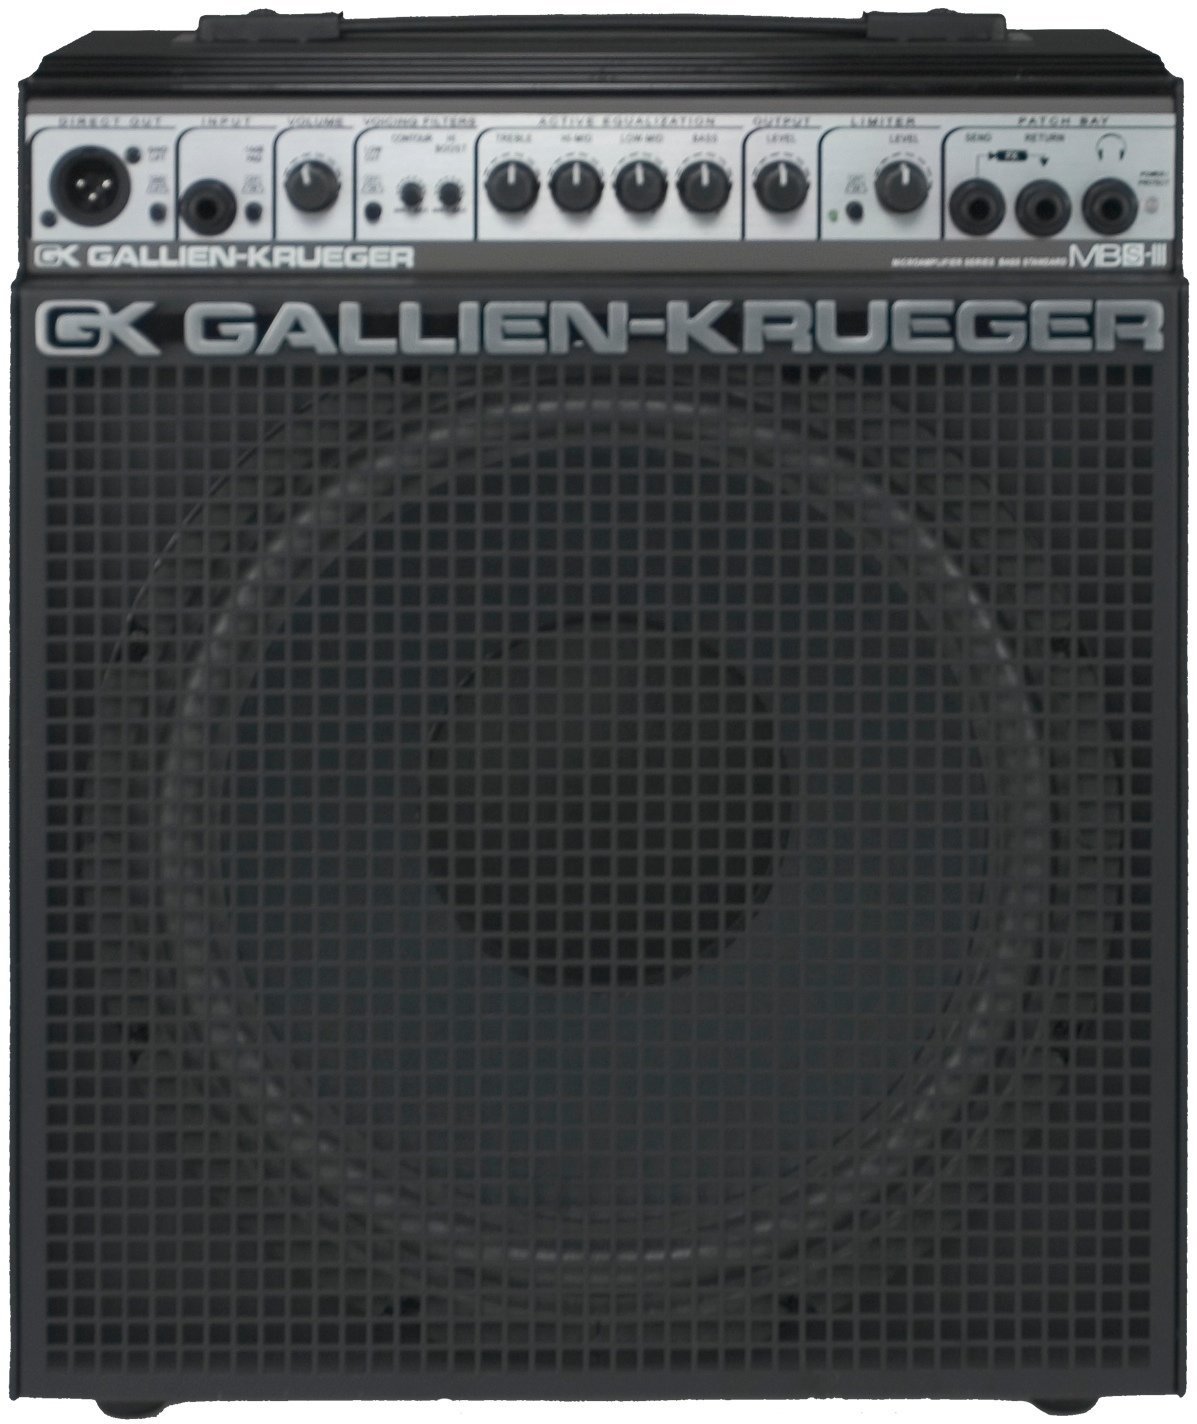 GX GALLIEN-KRUEGER MBS - ベース